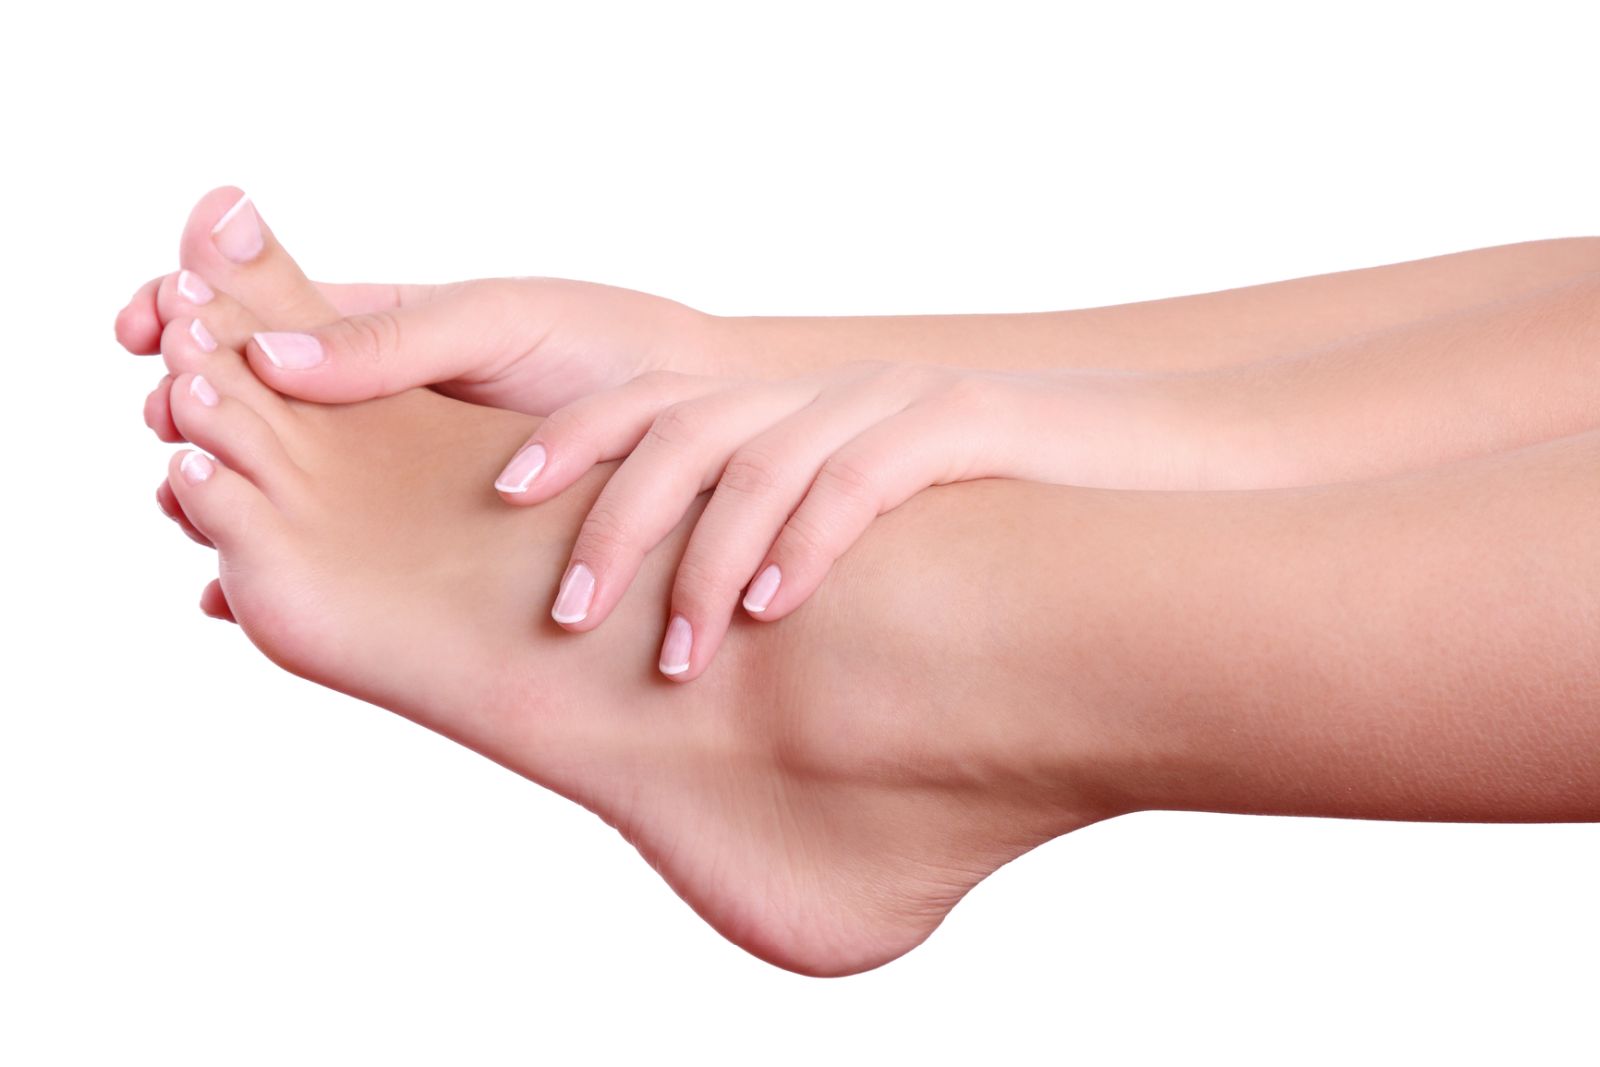 Huyệt Thái Xung nằm ở ngay mu bàn chân, cách khe giữa ngón chân cái và ngón thứ 2